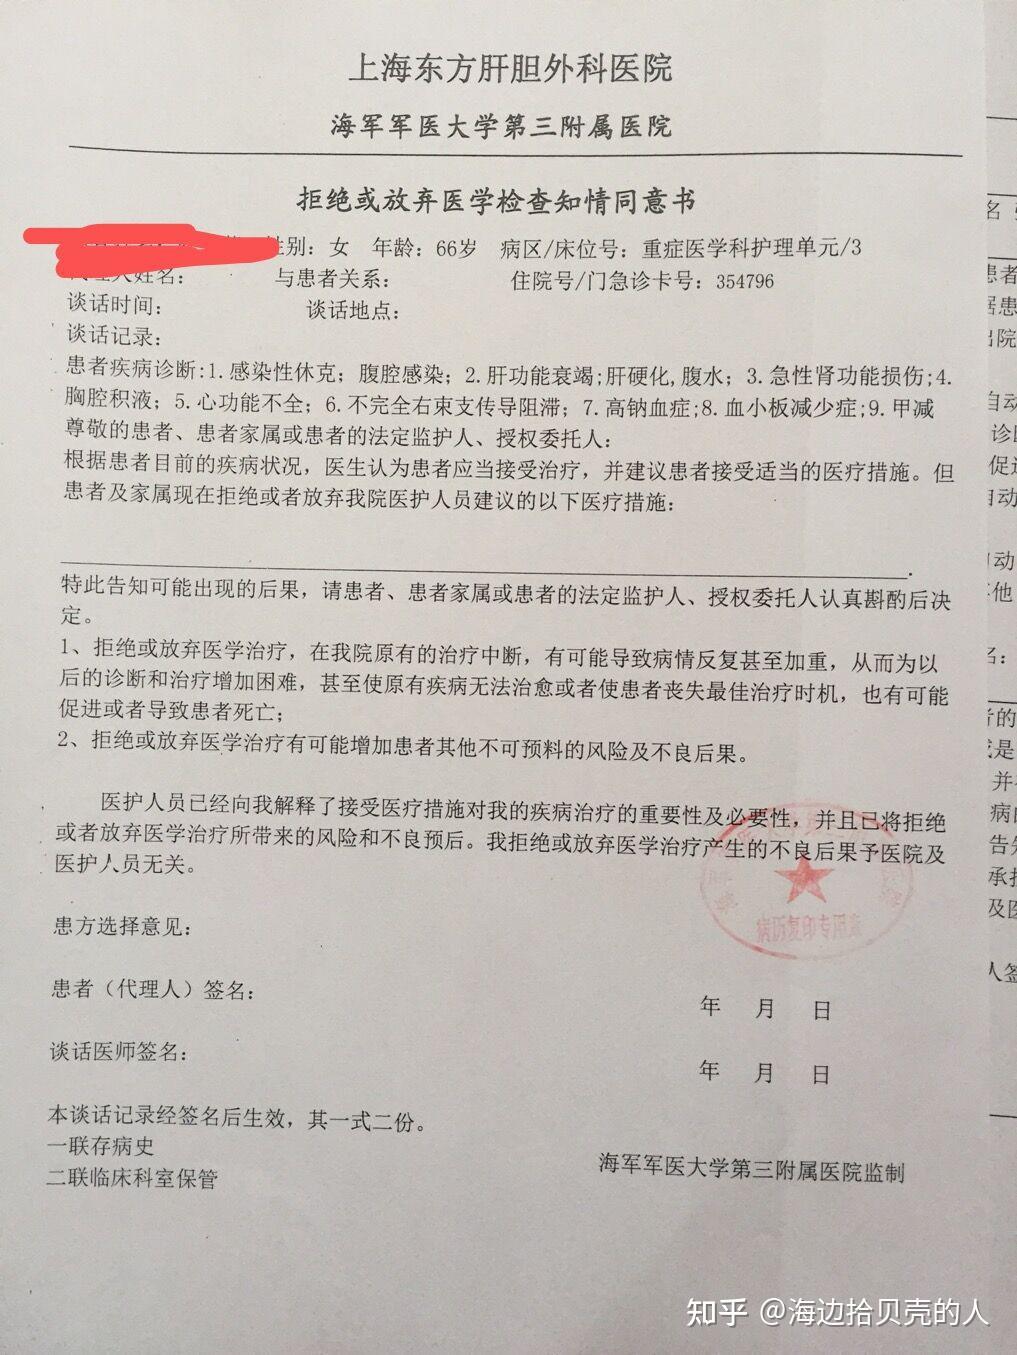 去上海东方肝胆外科医院复印病历需要准备哪些资料? 